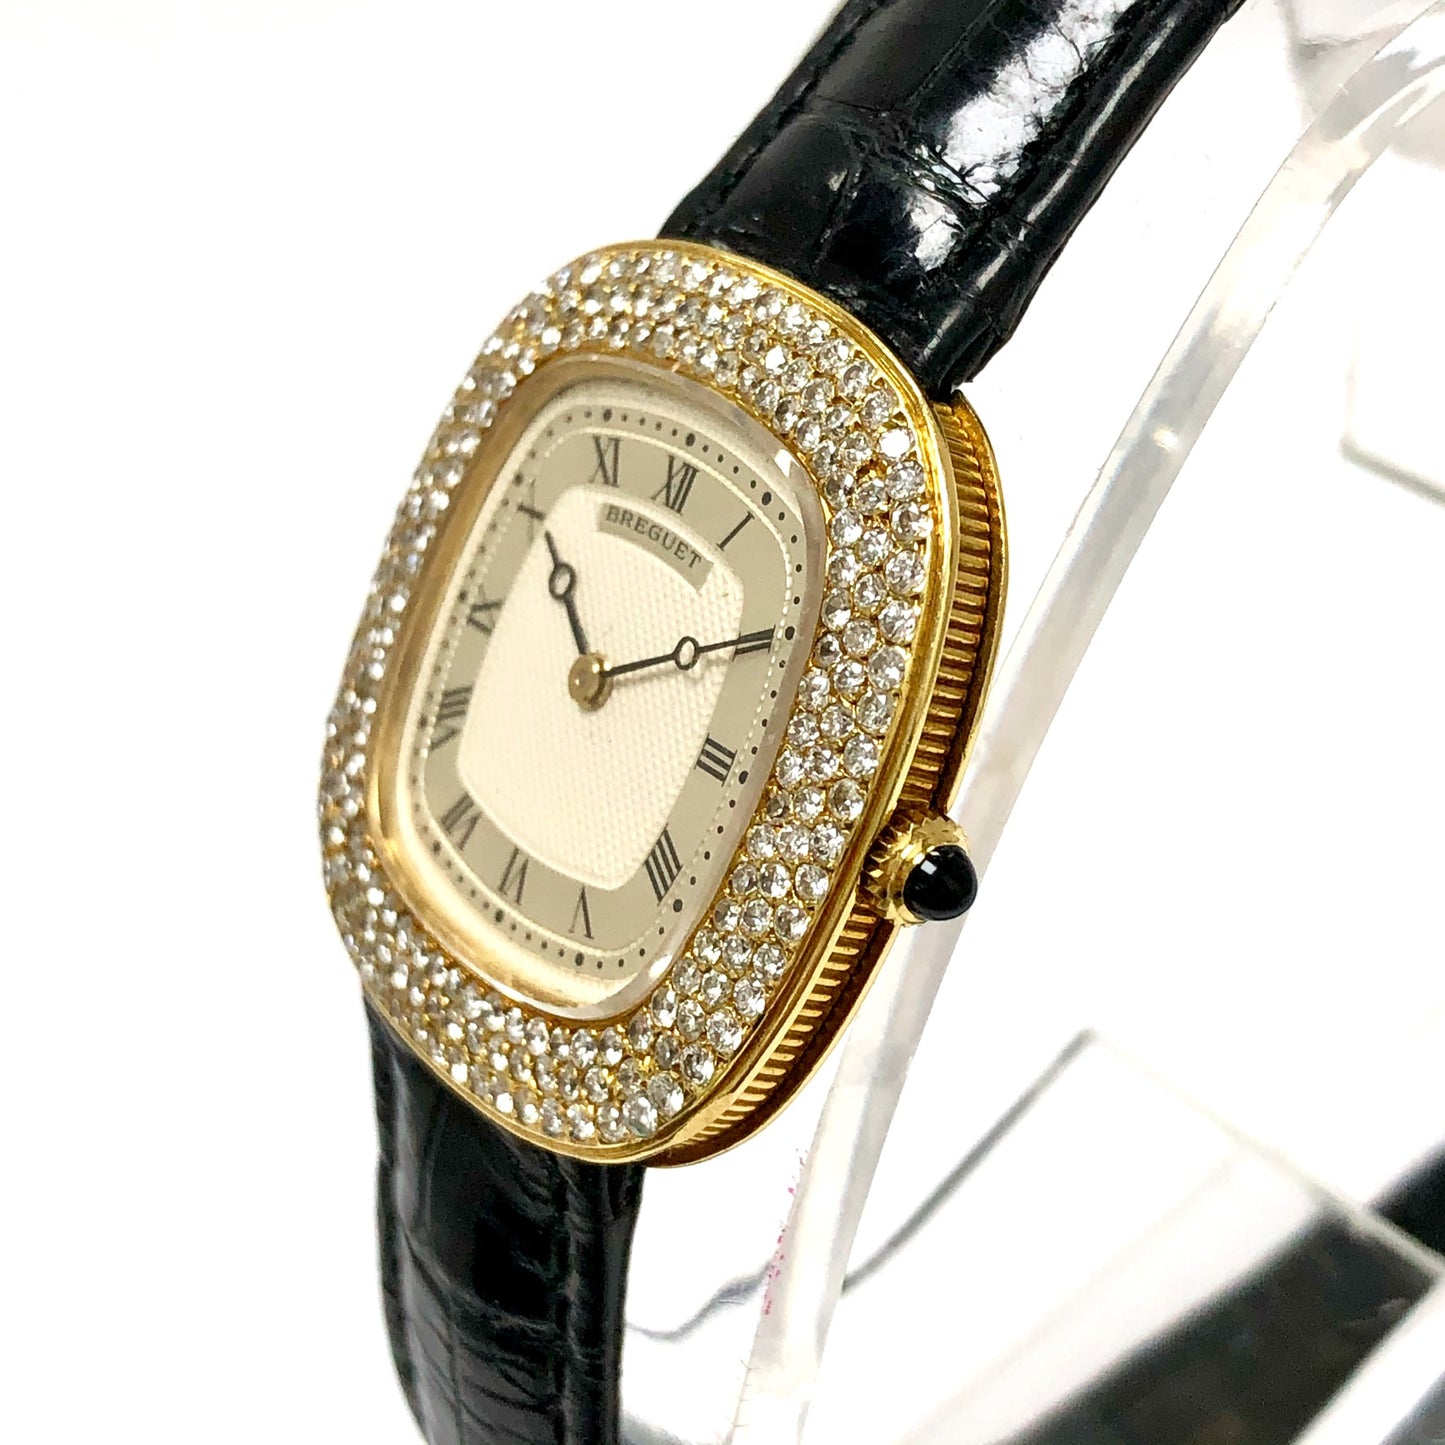 BREGUET Manual Winding 30mm 18K Yellow Gold DIAMOND Watch